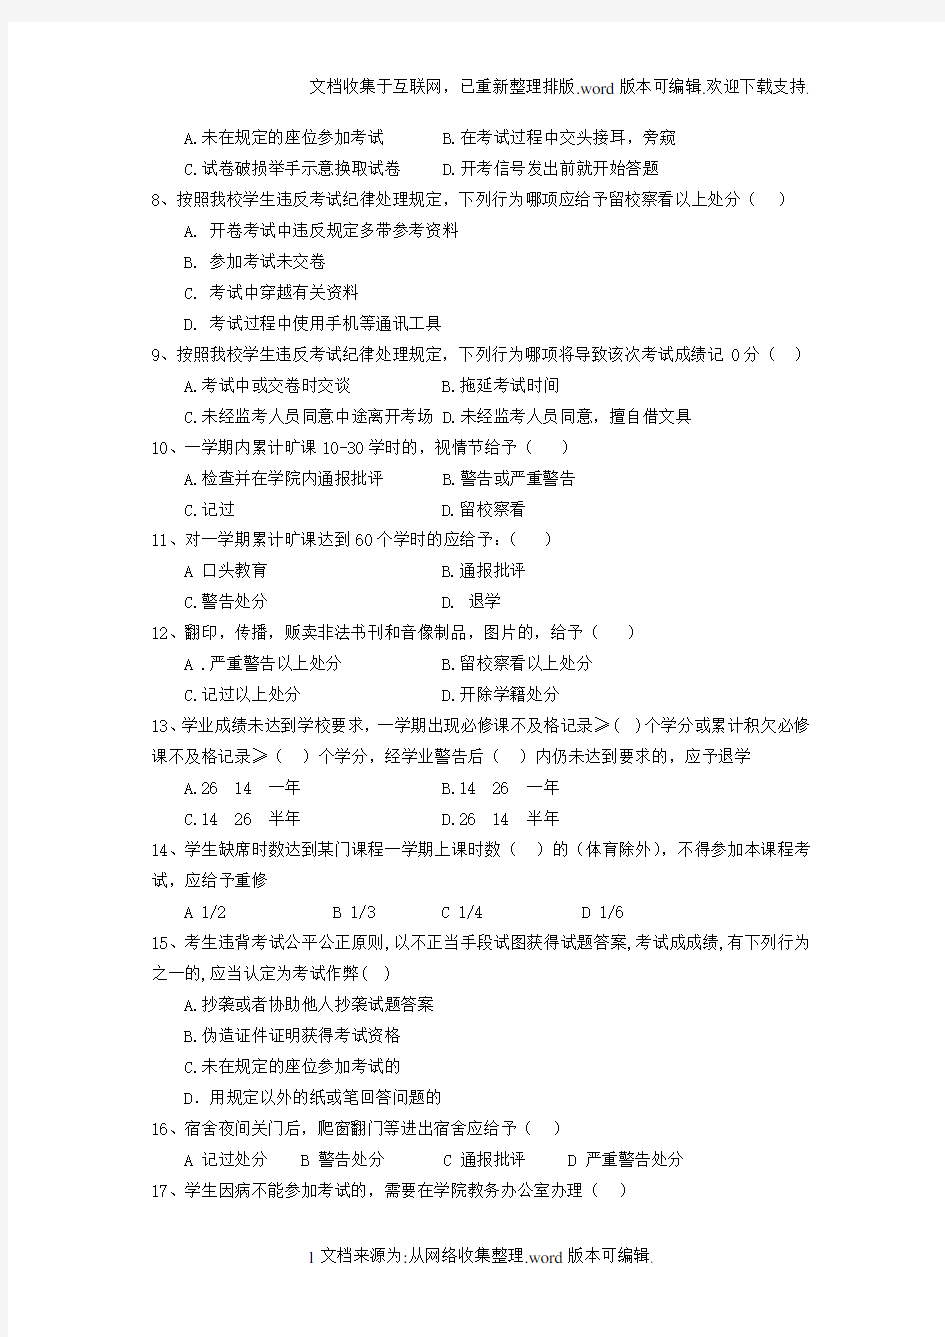 南京农业大学学生手册测试题